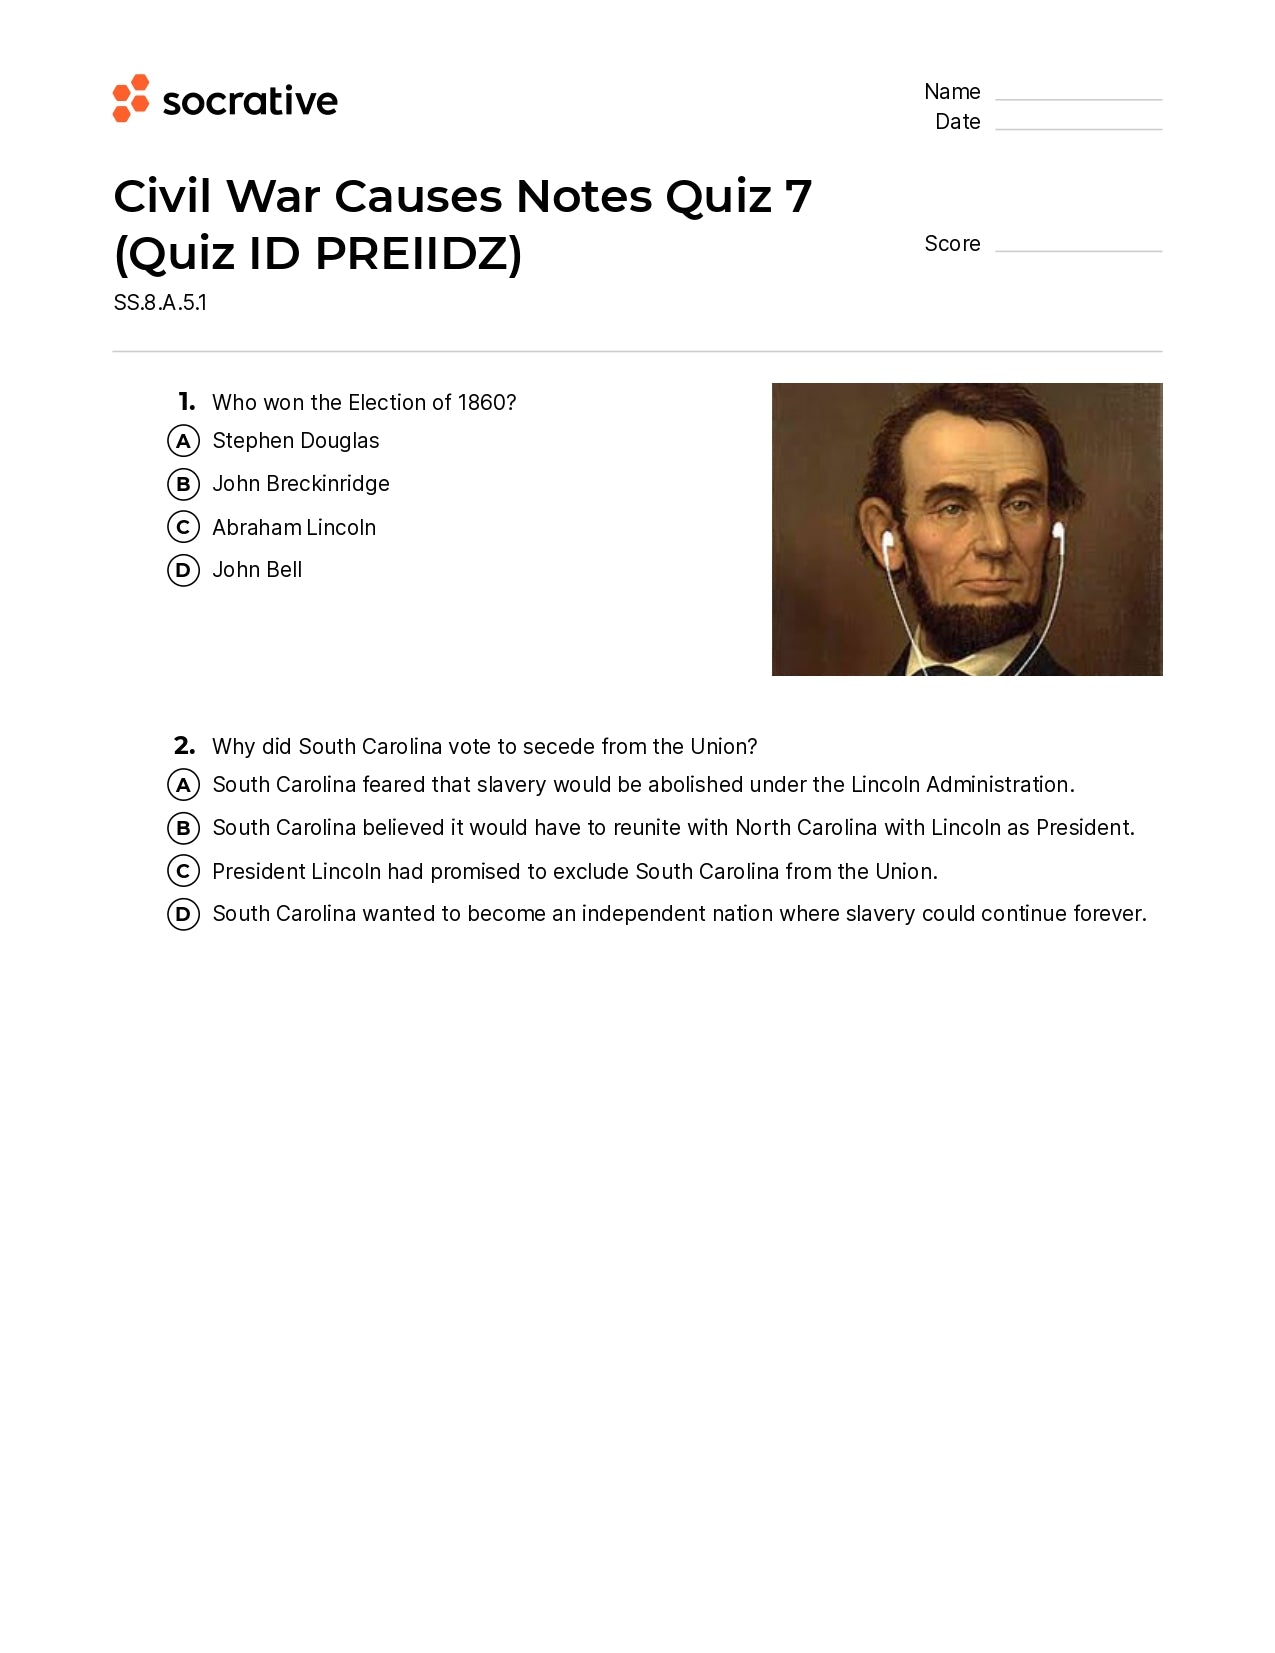 Civil War Causes Notes Quiz 7